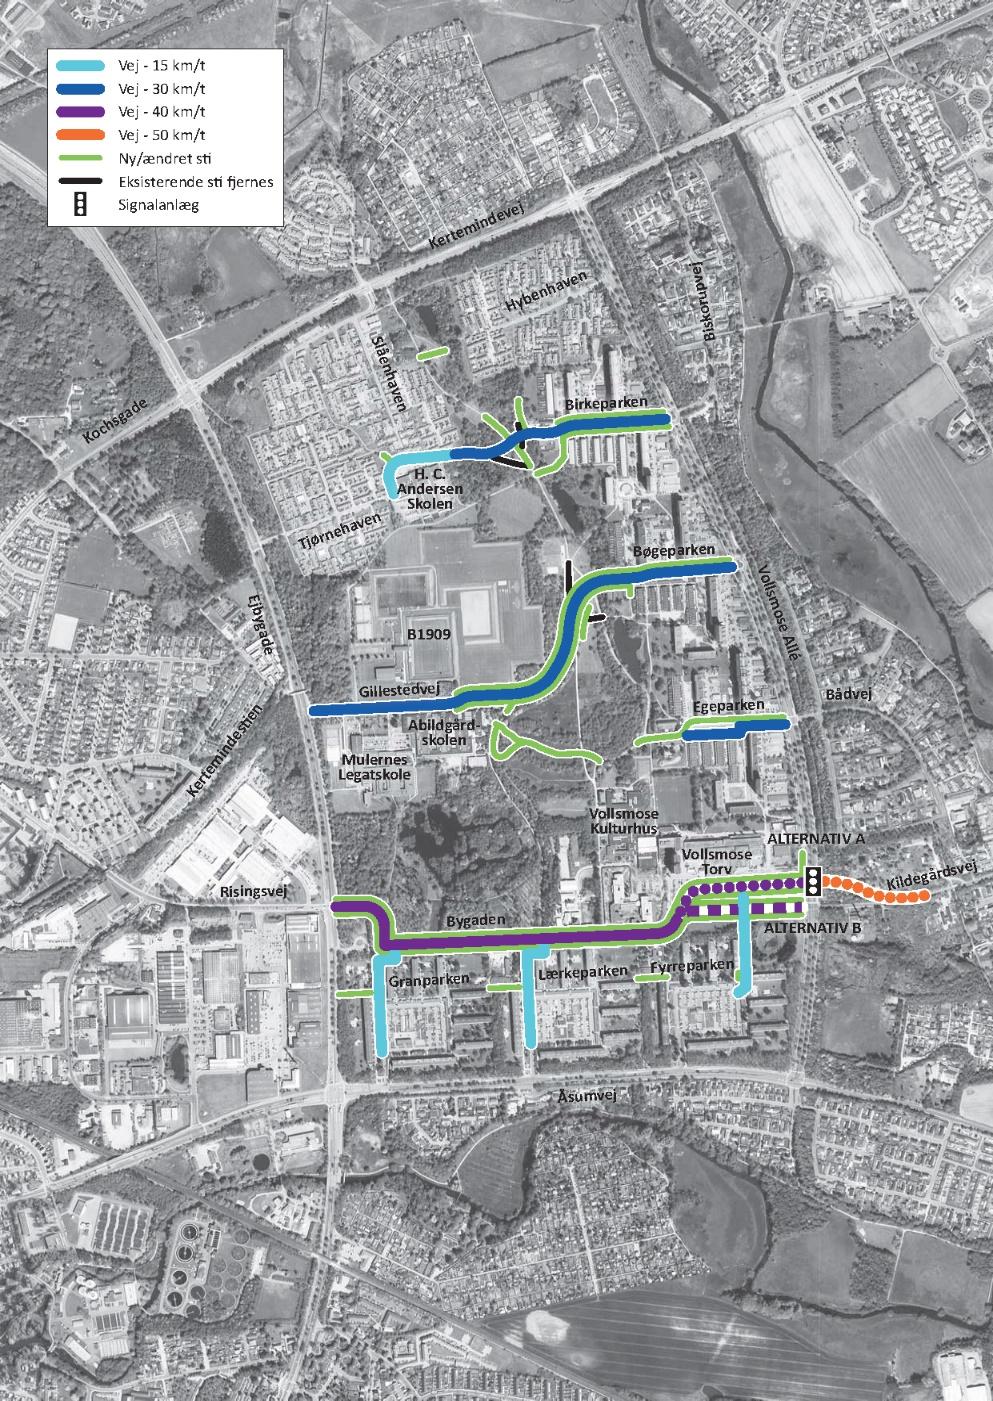 Figur 1: Projektforslag for nye og ændrede veje og stier i Vollsmose.